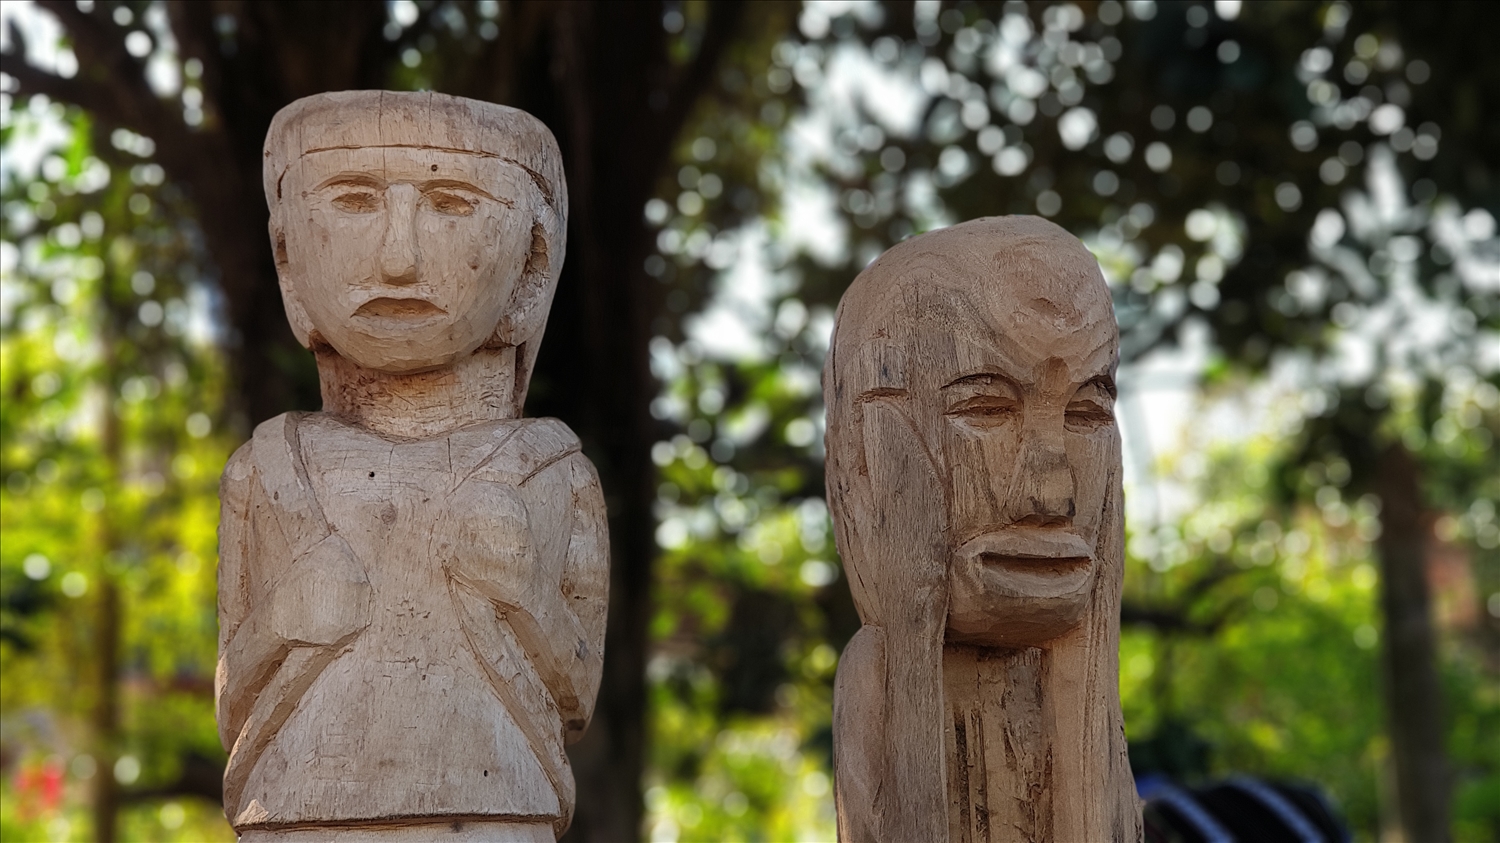 Bằng sự khéo léo, tỉ mỉ và óc sáng tạo, các nghệ nhân đã tạo ra những bức tượng gỗ có hồn 